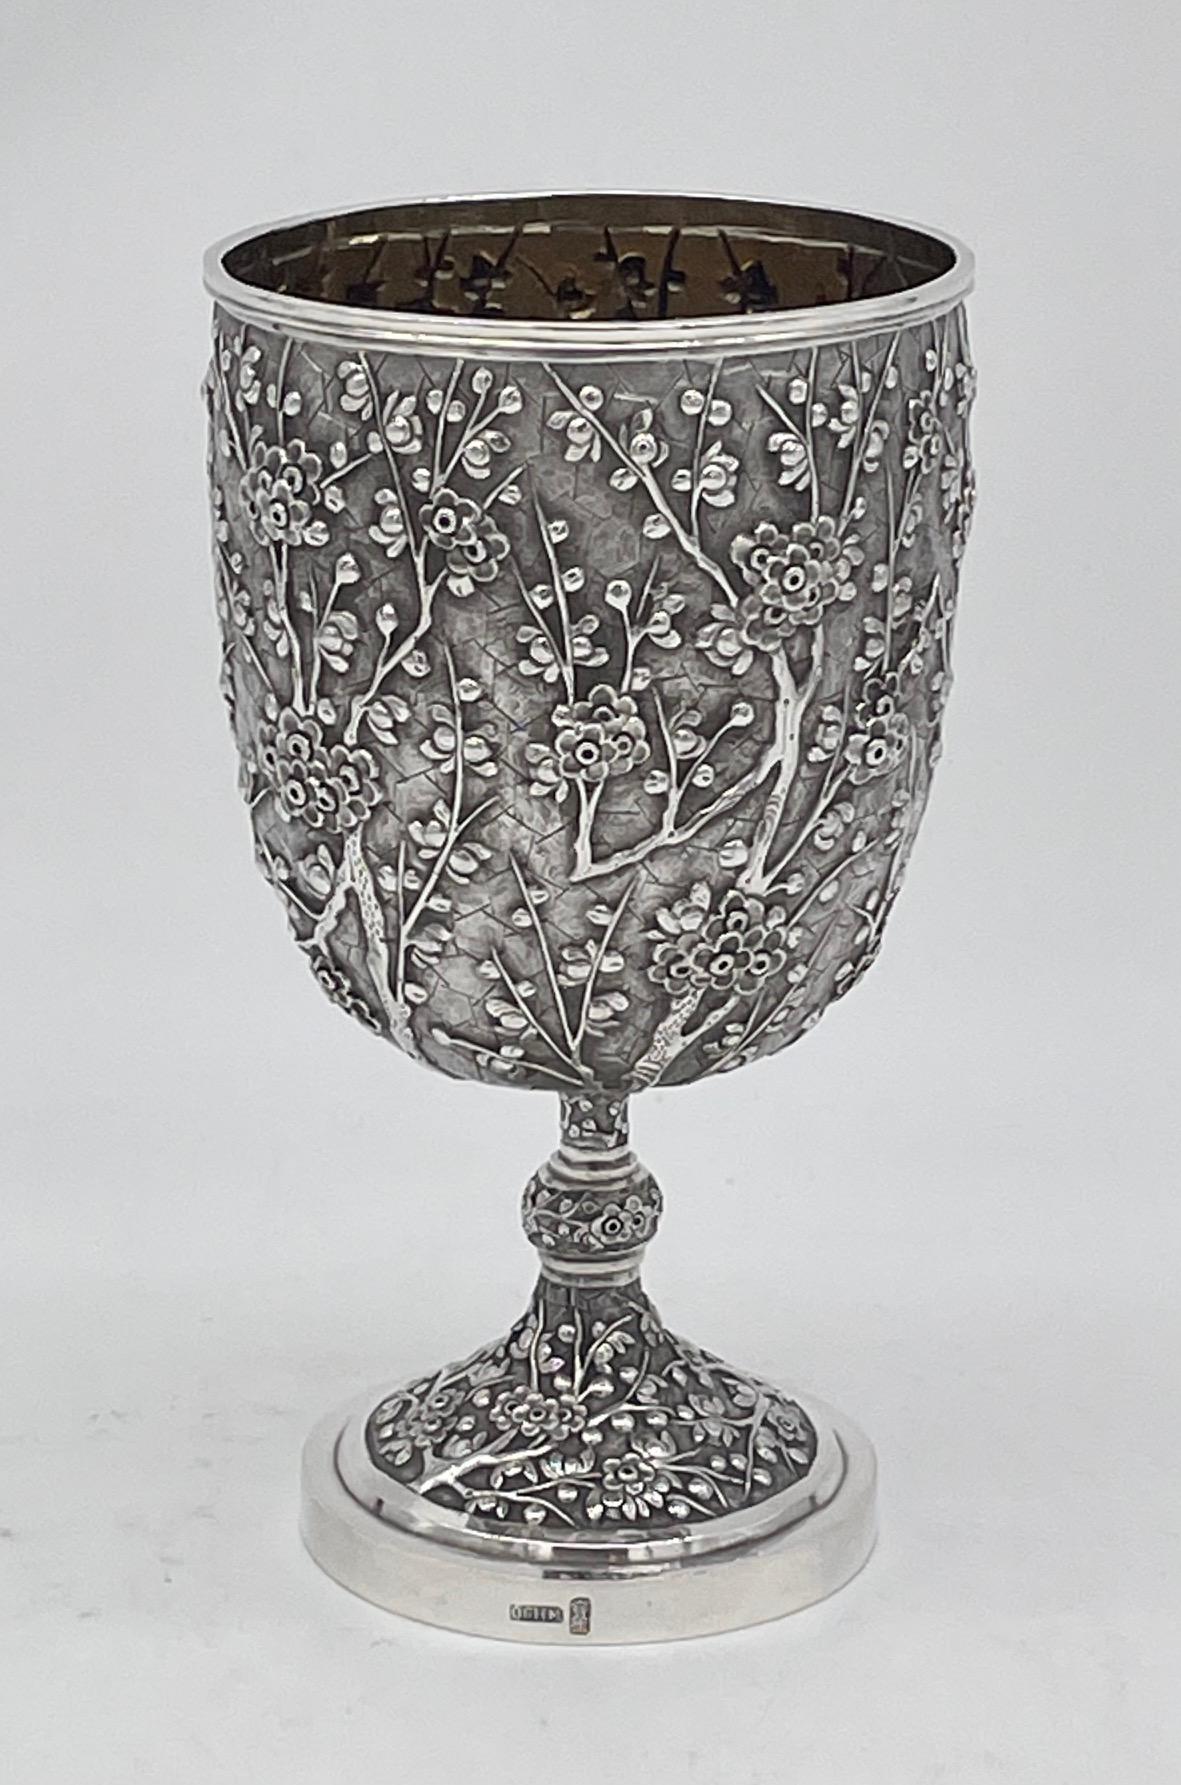 Gobelet en argent d'exportation chinoise, avec décoration de prunus. Le gobelet pèse 258 g et date d'environ 1885. Marqué WH pour Wang Hing 